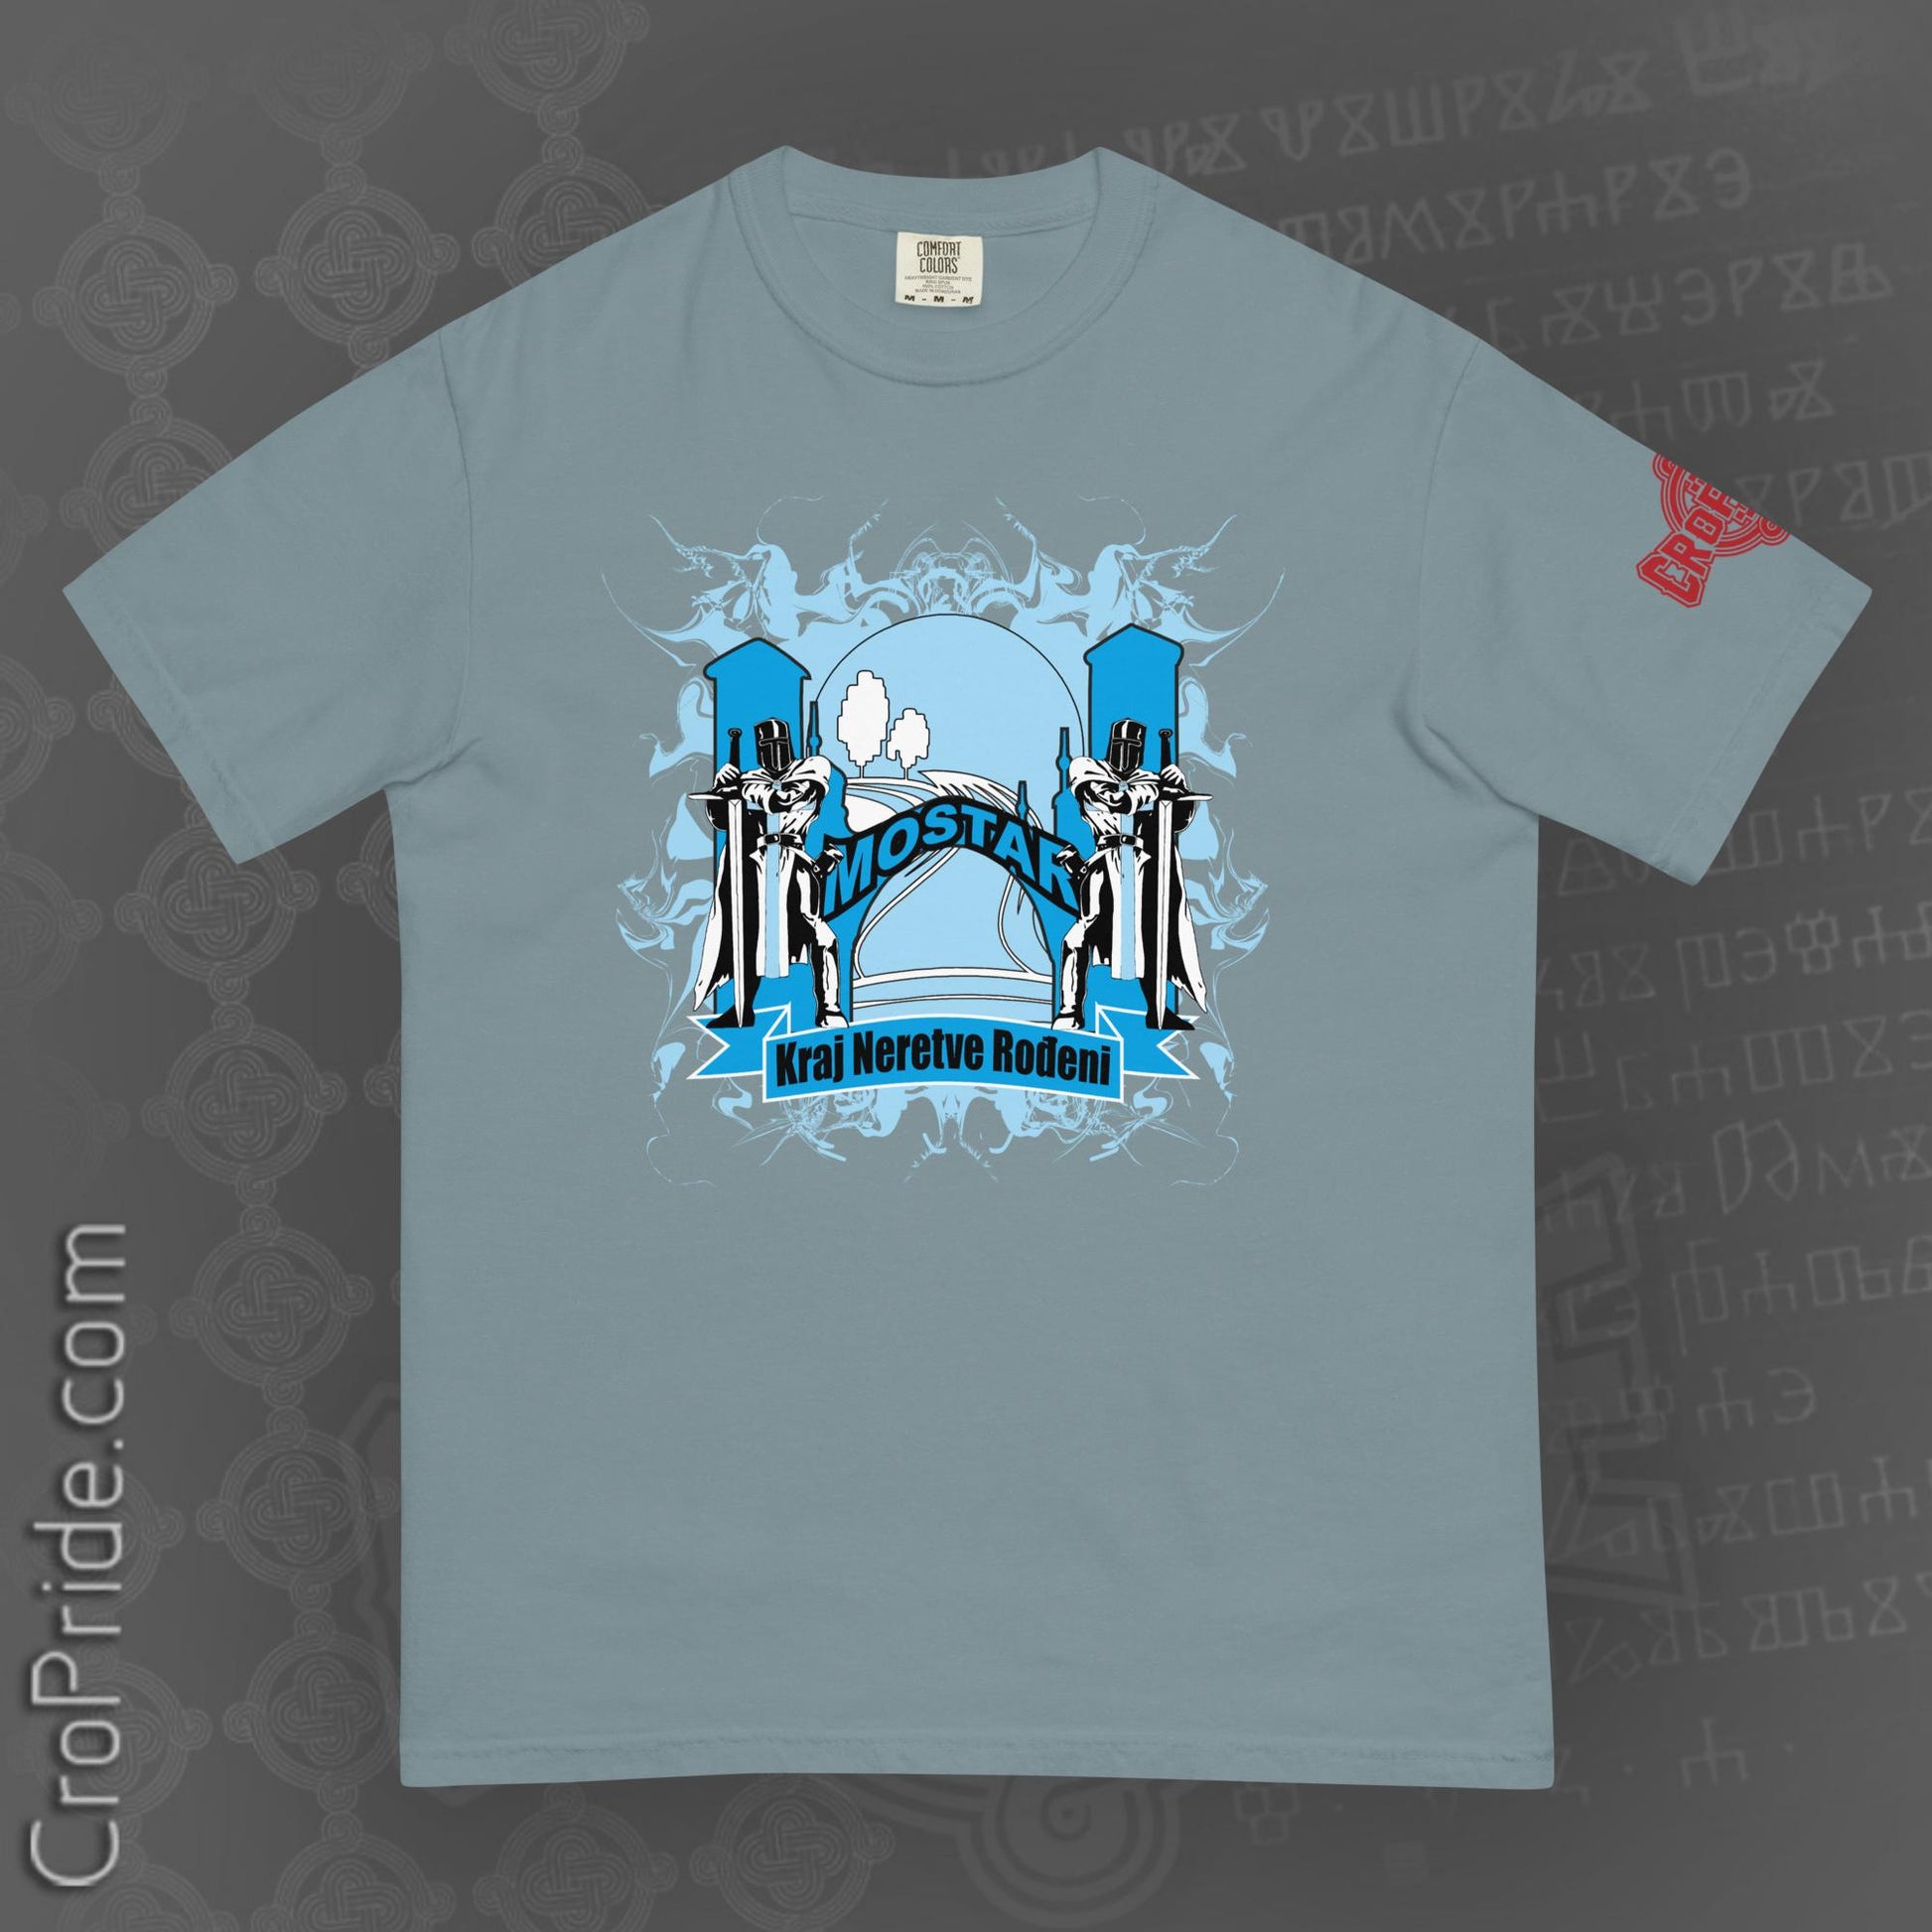 "Mostar"-Hercegovina Men’s T-shirt Designed By CroPride Gear